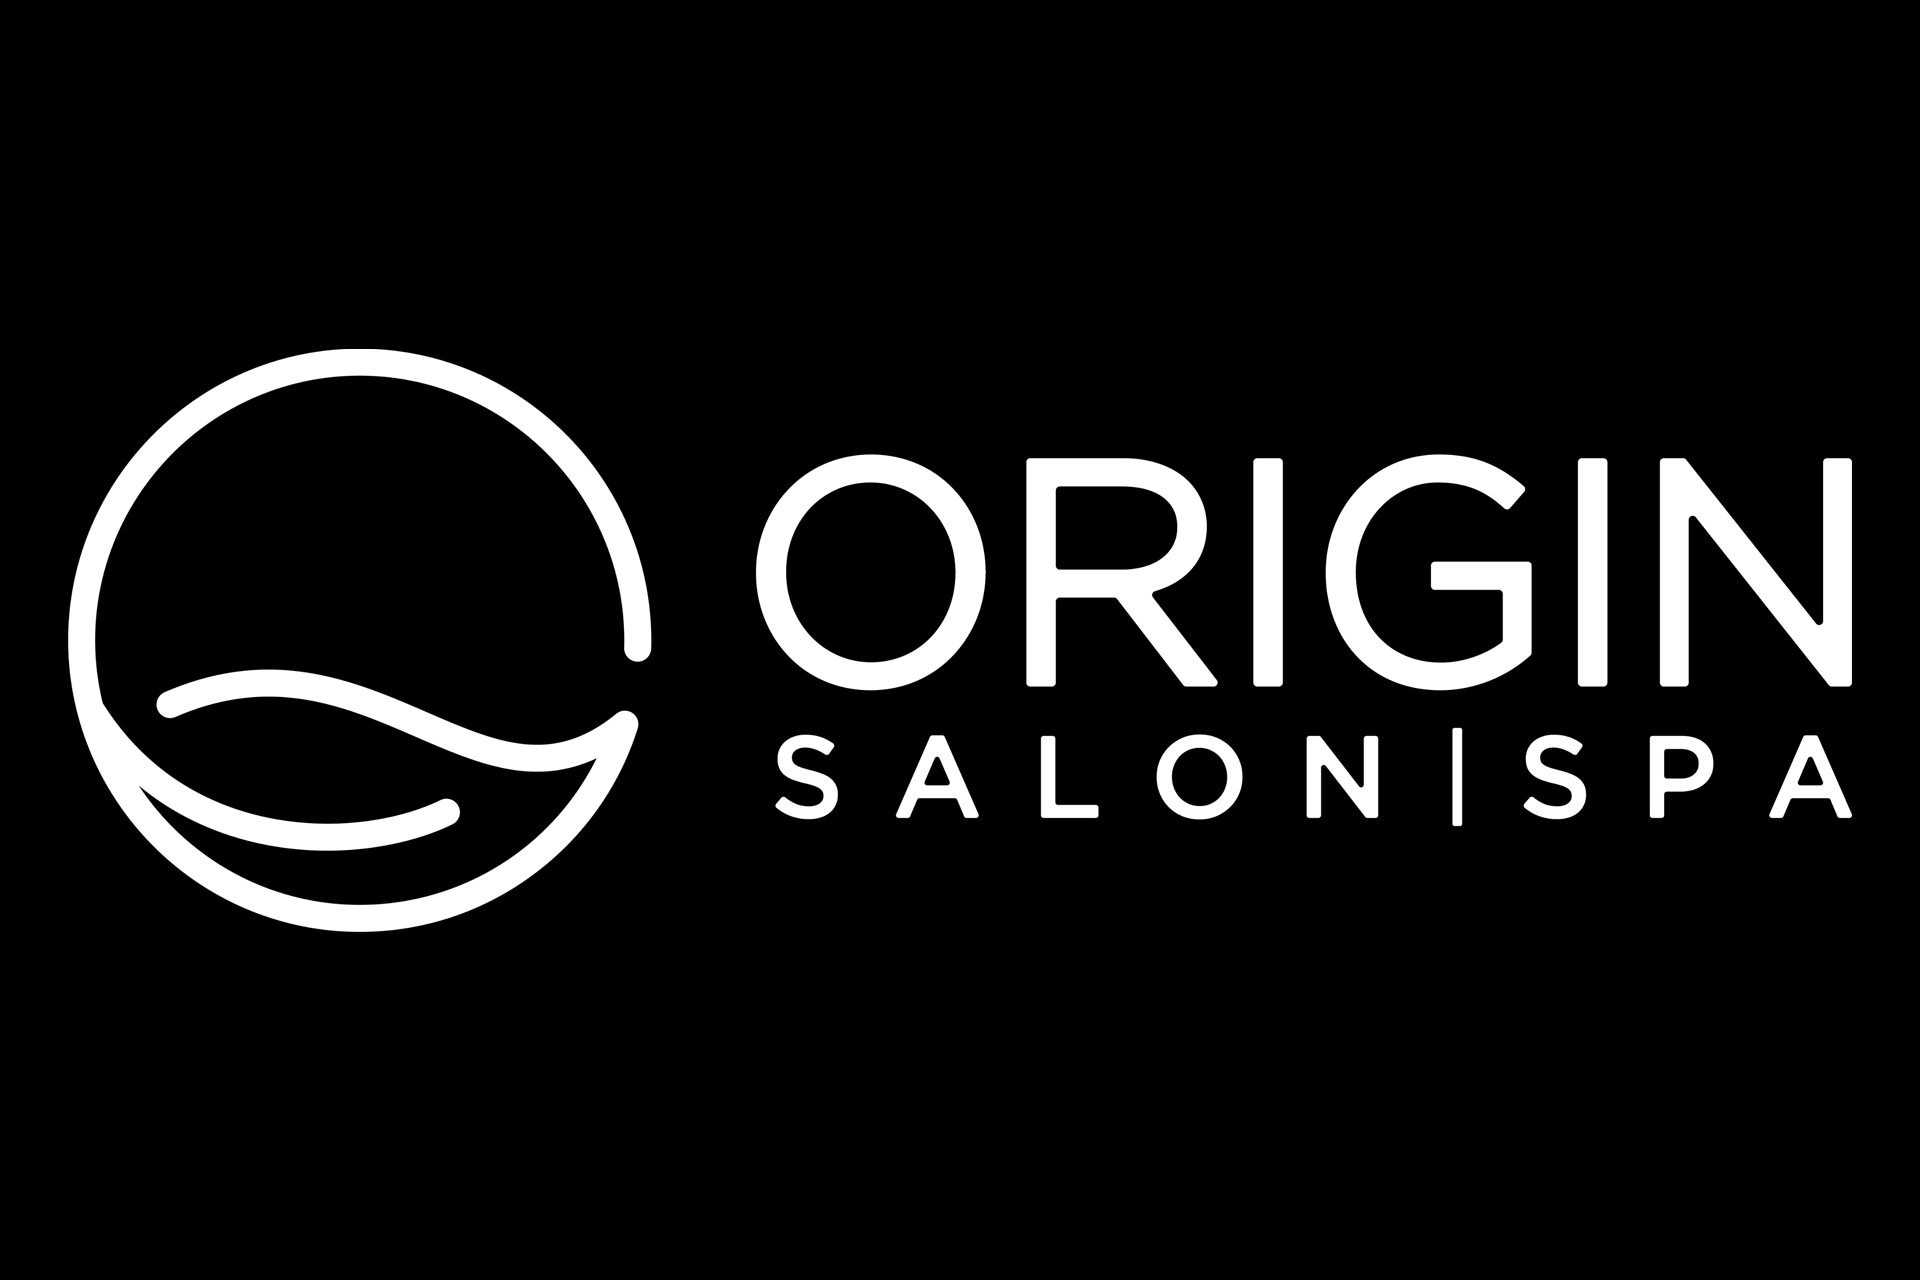 Book Online - Origin Salon Spa: Đặt lịch trực tuyến ngay bây giờ để trải nghiệm dịch vụ chăm sóc tuyệt vời tại Origin Salon Spa. Với nhiều gói dịch vụ đa dạng và phù hợp với mọi nhu cầu, bạn chắc chắn sẽ có một trải nghiệm tuyệt vời. Hãy xem hình ảnh để tìm hiểu thêm. 